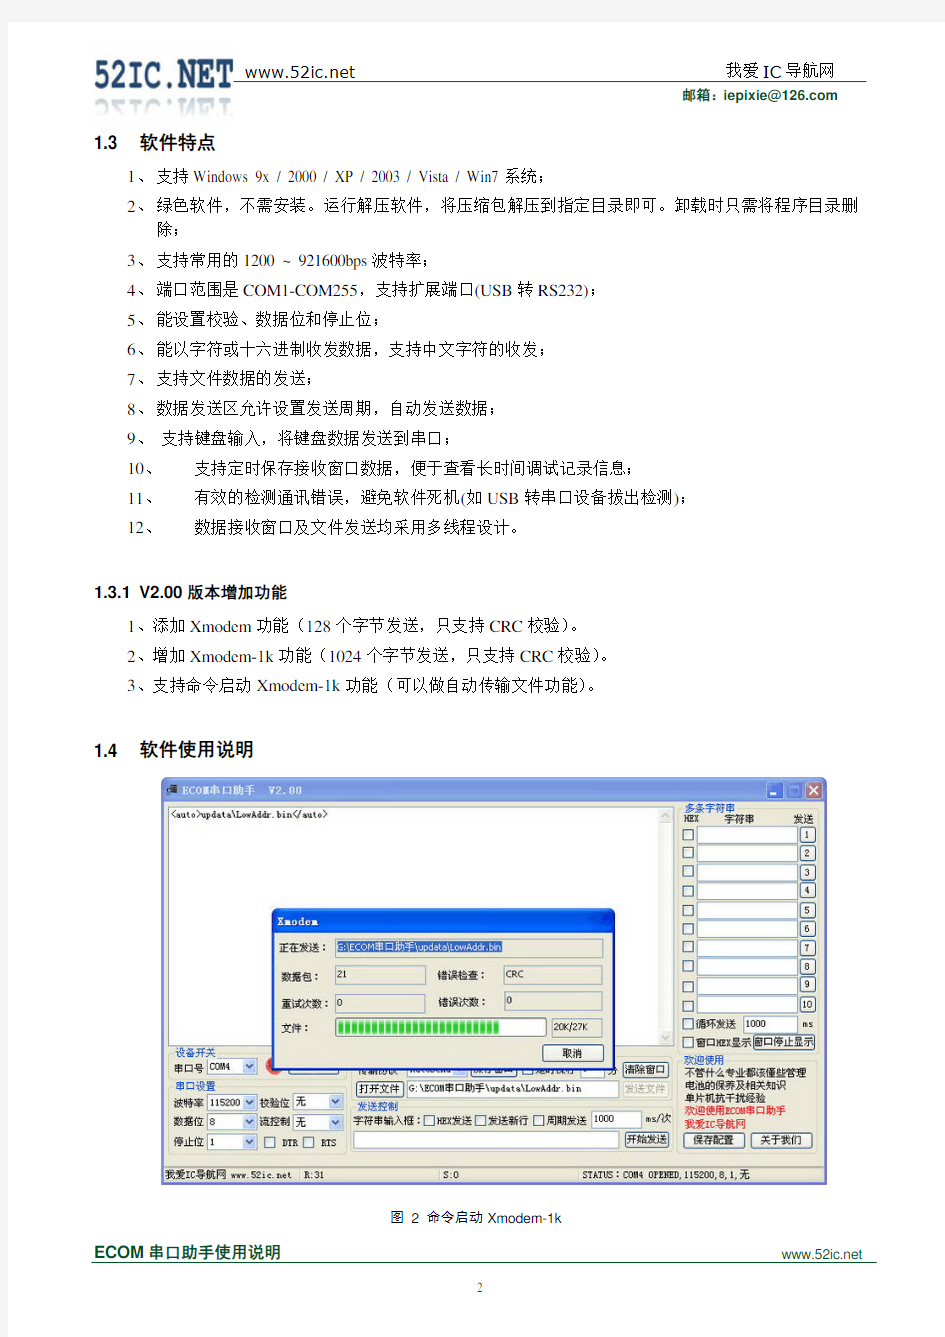 ECOM串口助手V2.0使用说明书